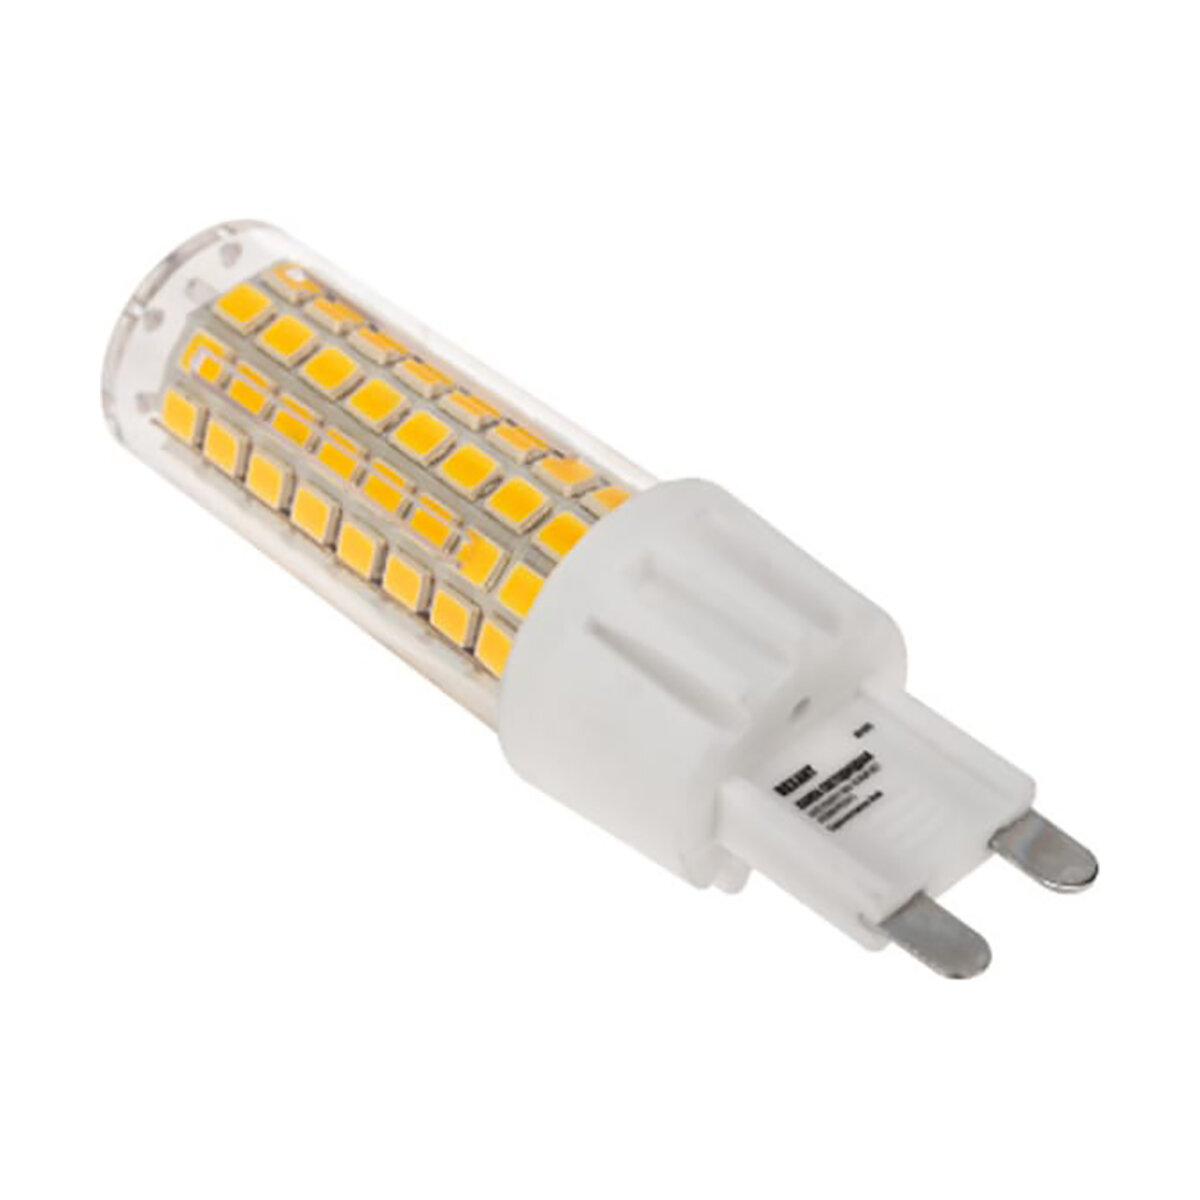 СДС ООО Лампа светодиодная Rexant JD-Corn Капсульная, 7 Вт, 2700 К, G9, теплый свет